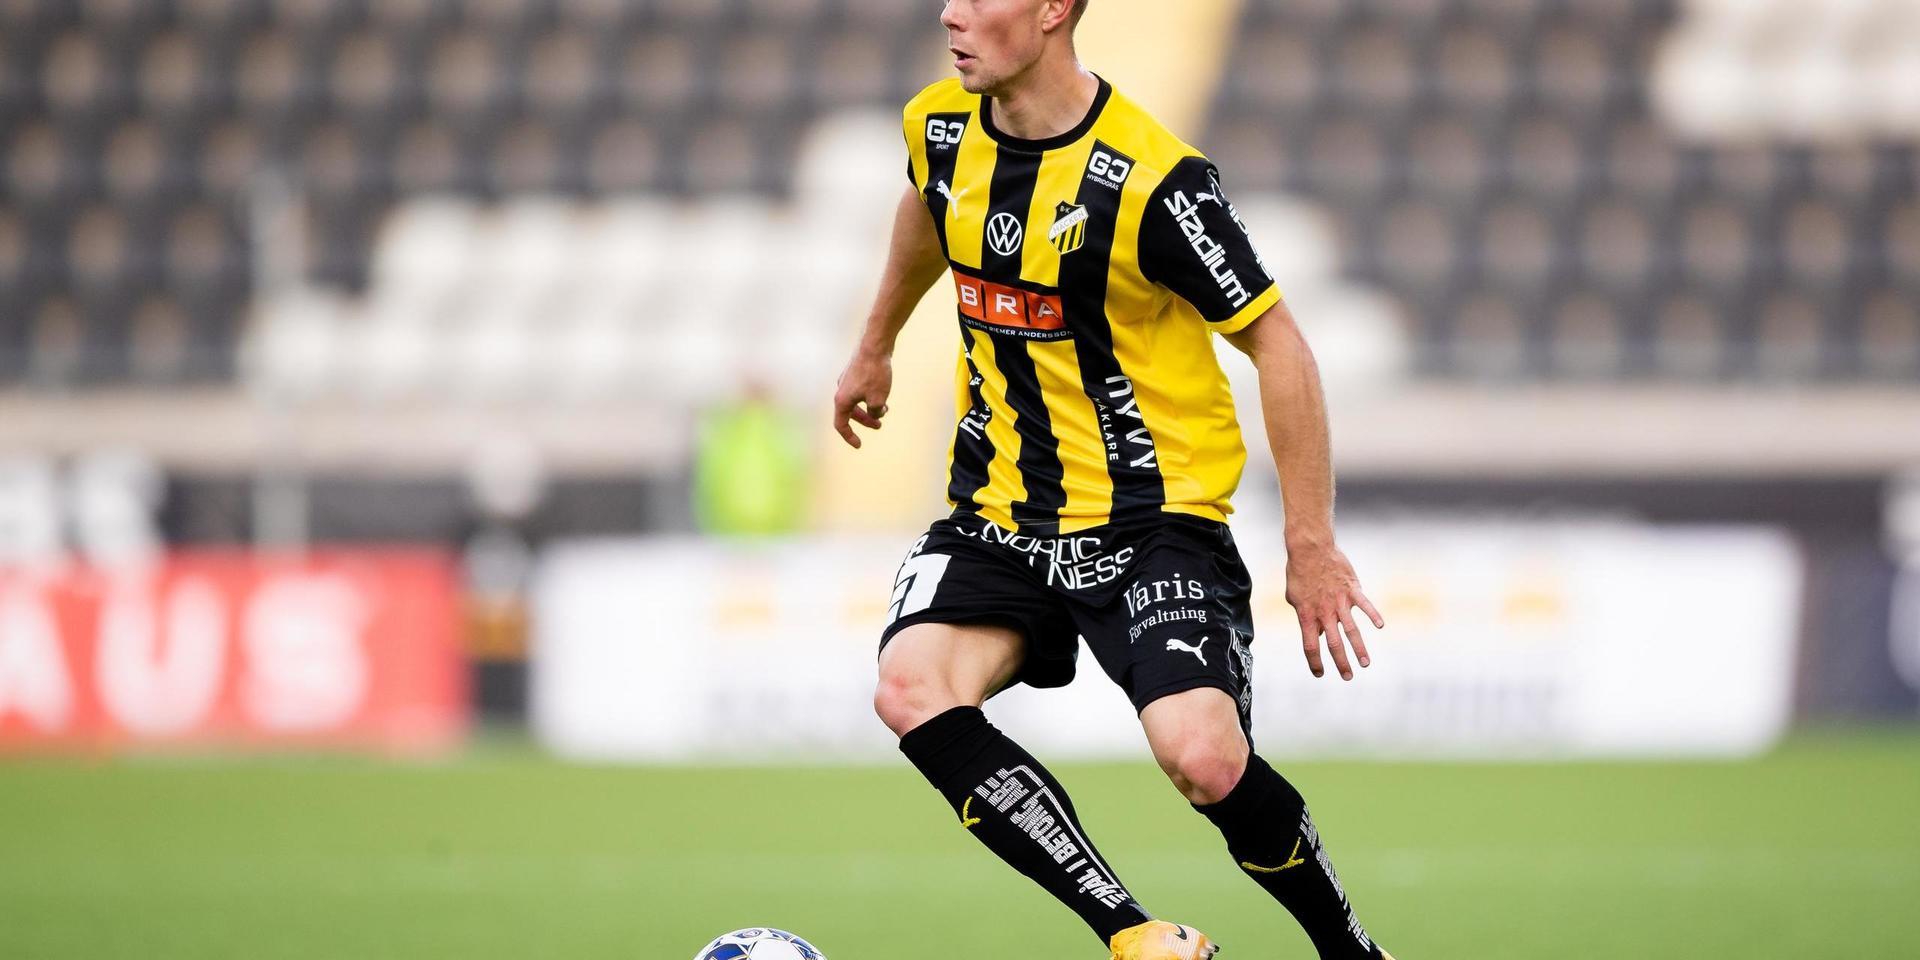 Häckens Adam Andersson under fotbollsmatchen i Allsvenskan mellan Häcken och Mjällby den 24 oktober 2020 i Göteborg.